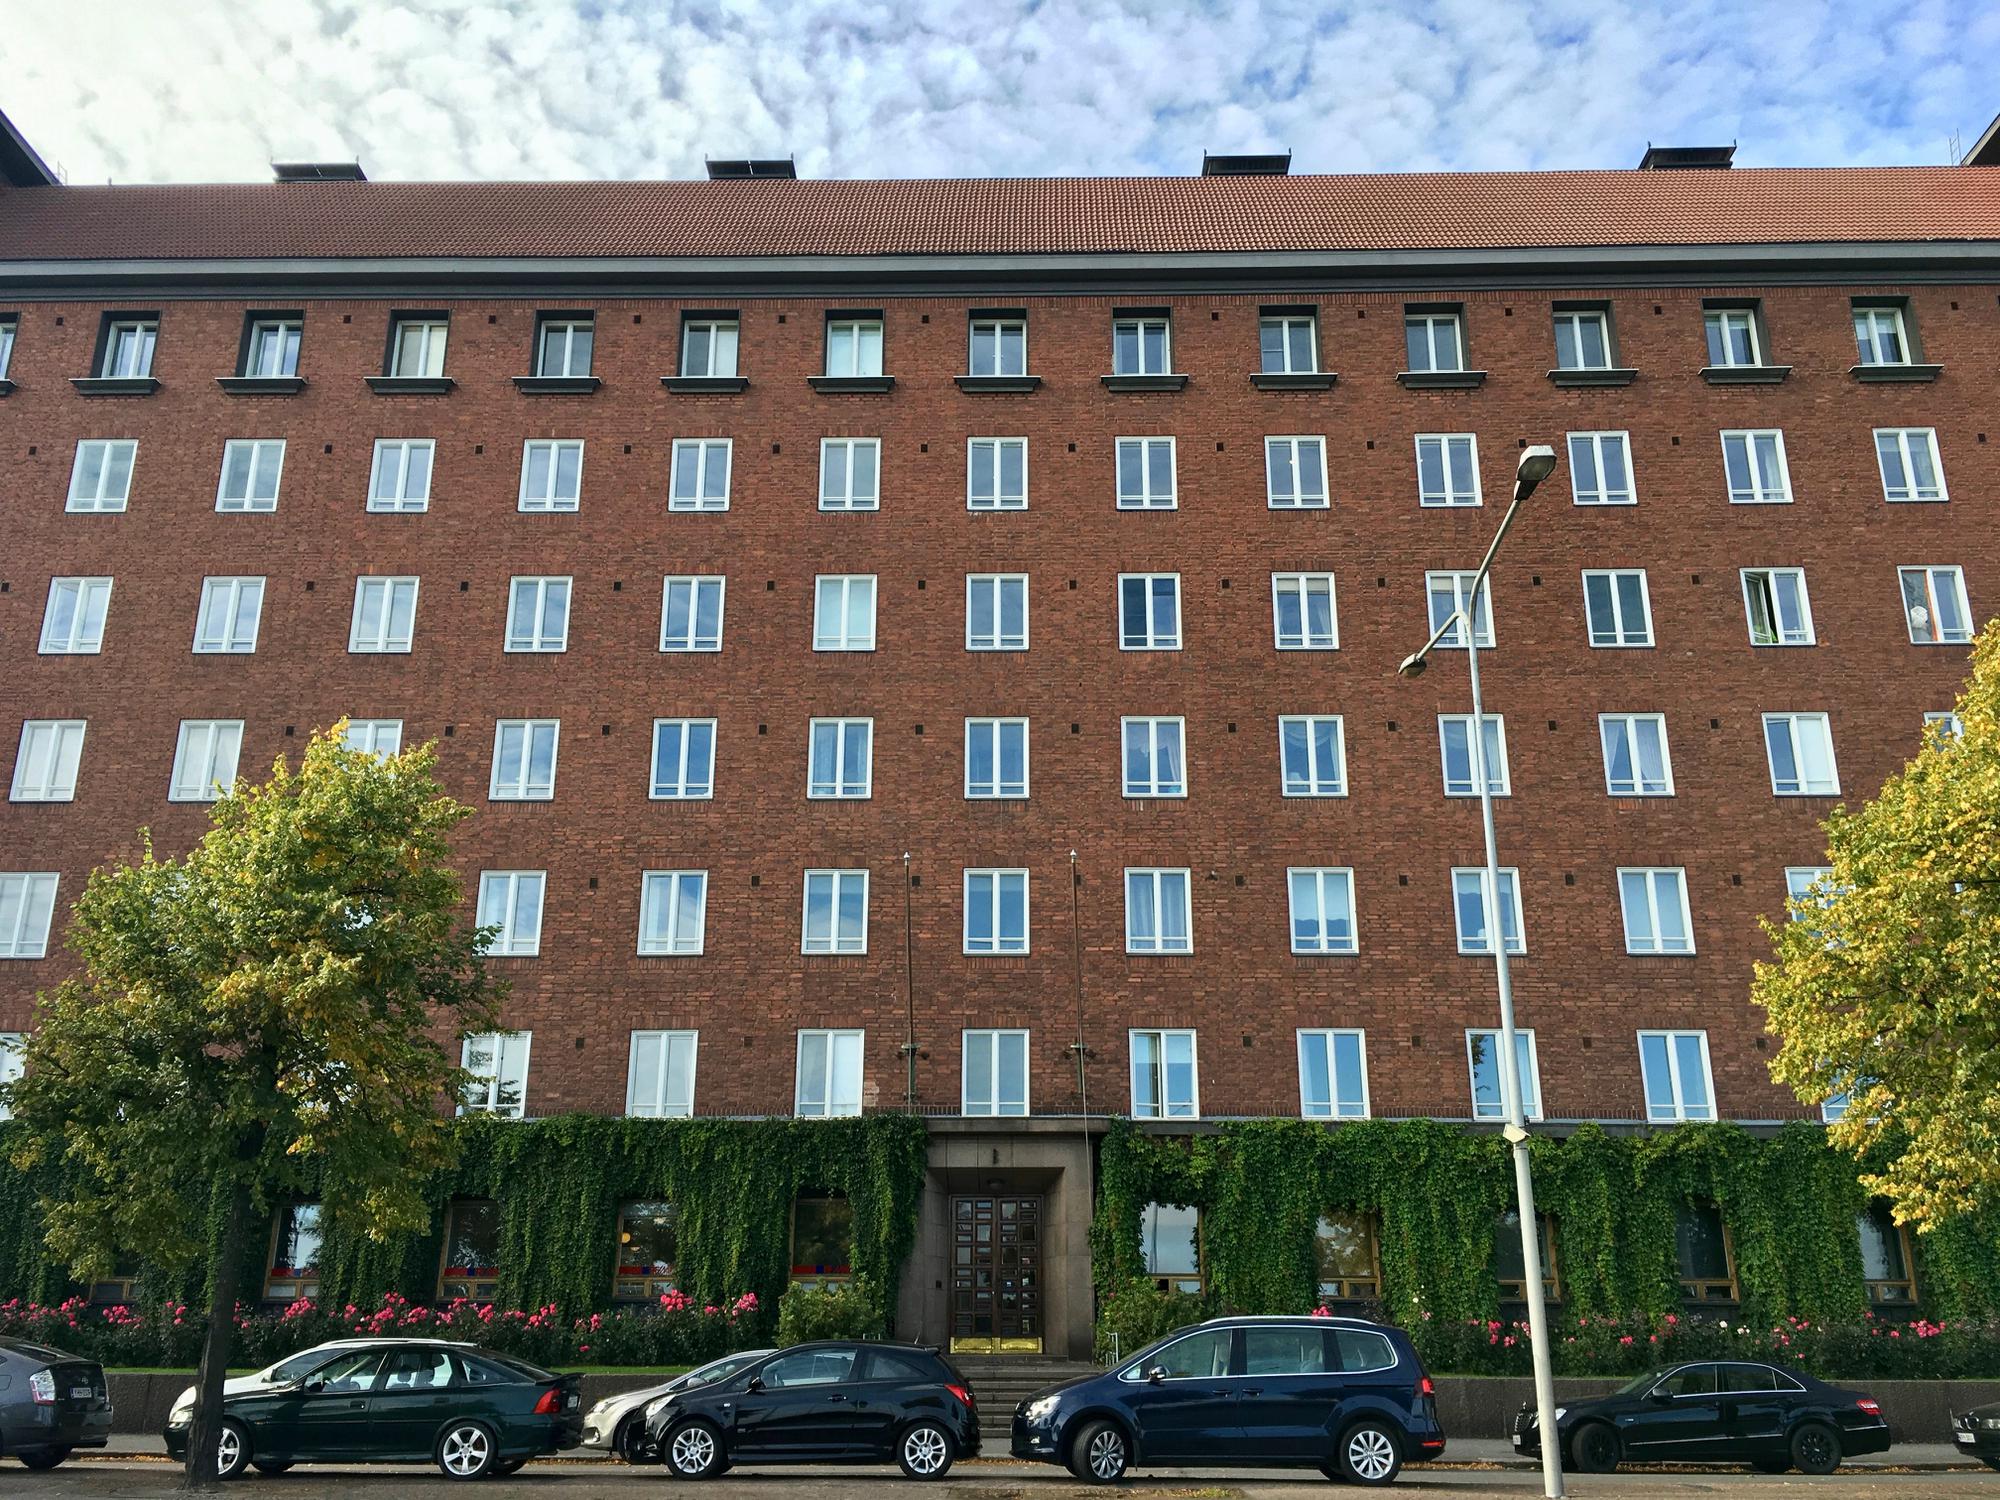 🇫🇮 Helsinki, Finland, September 2016.